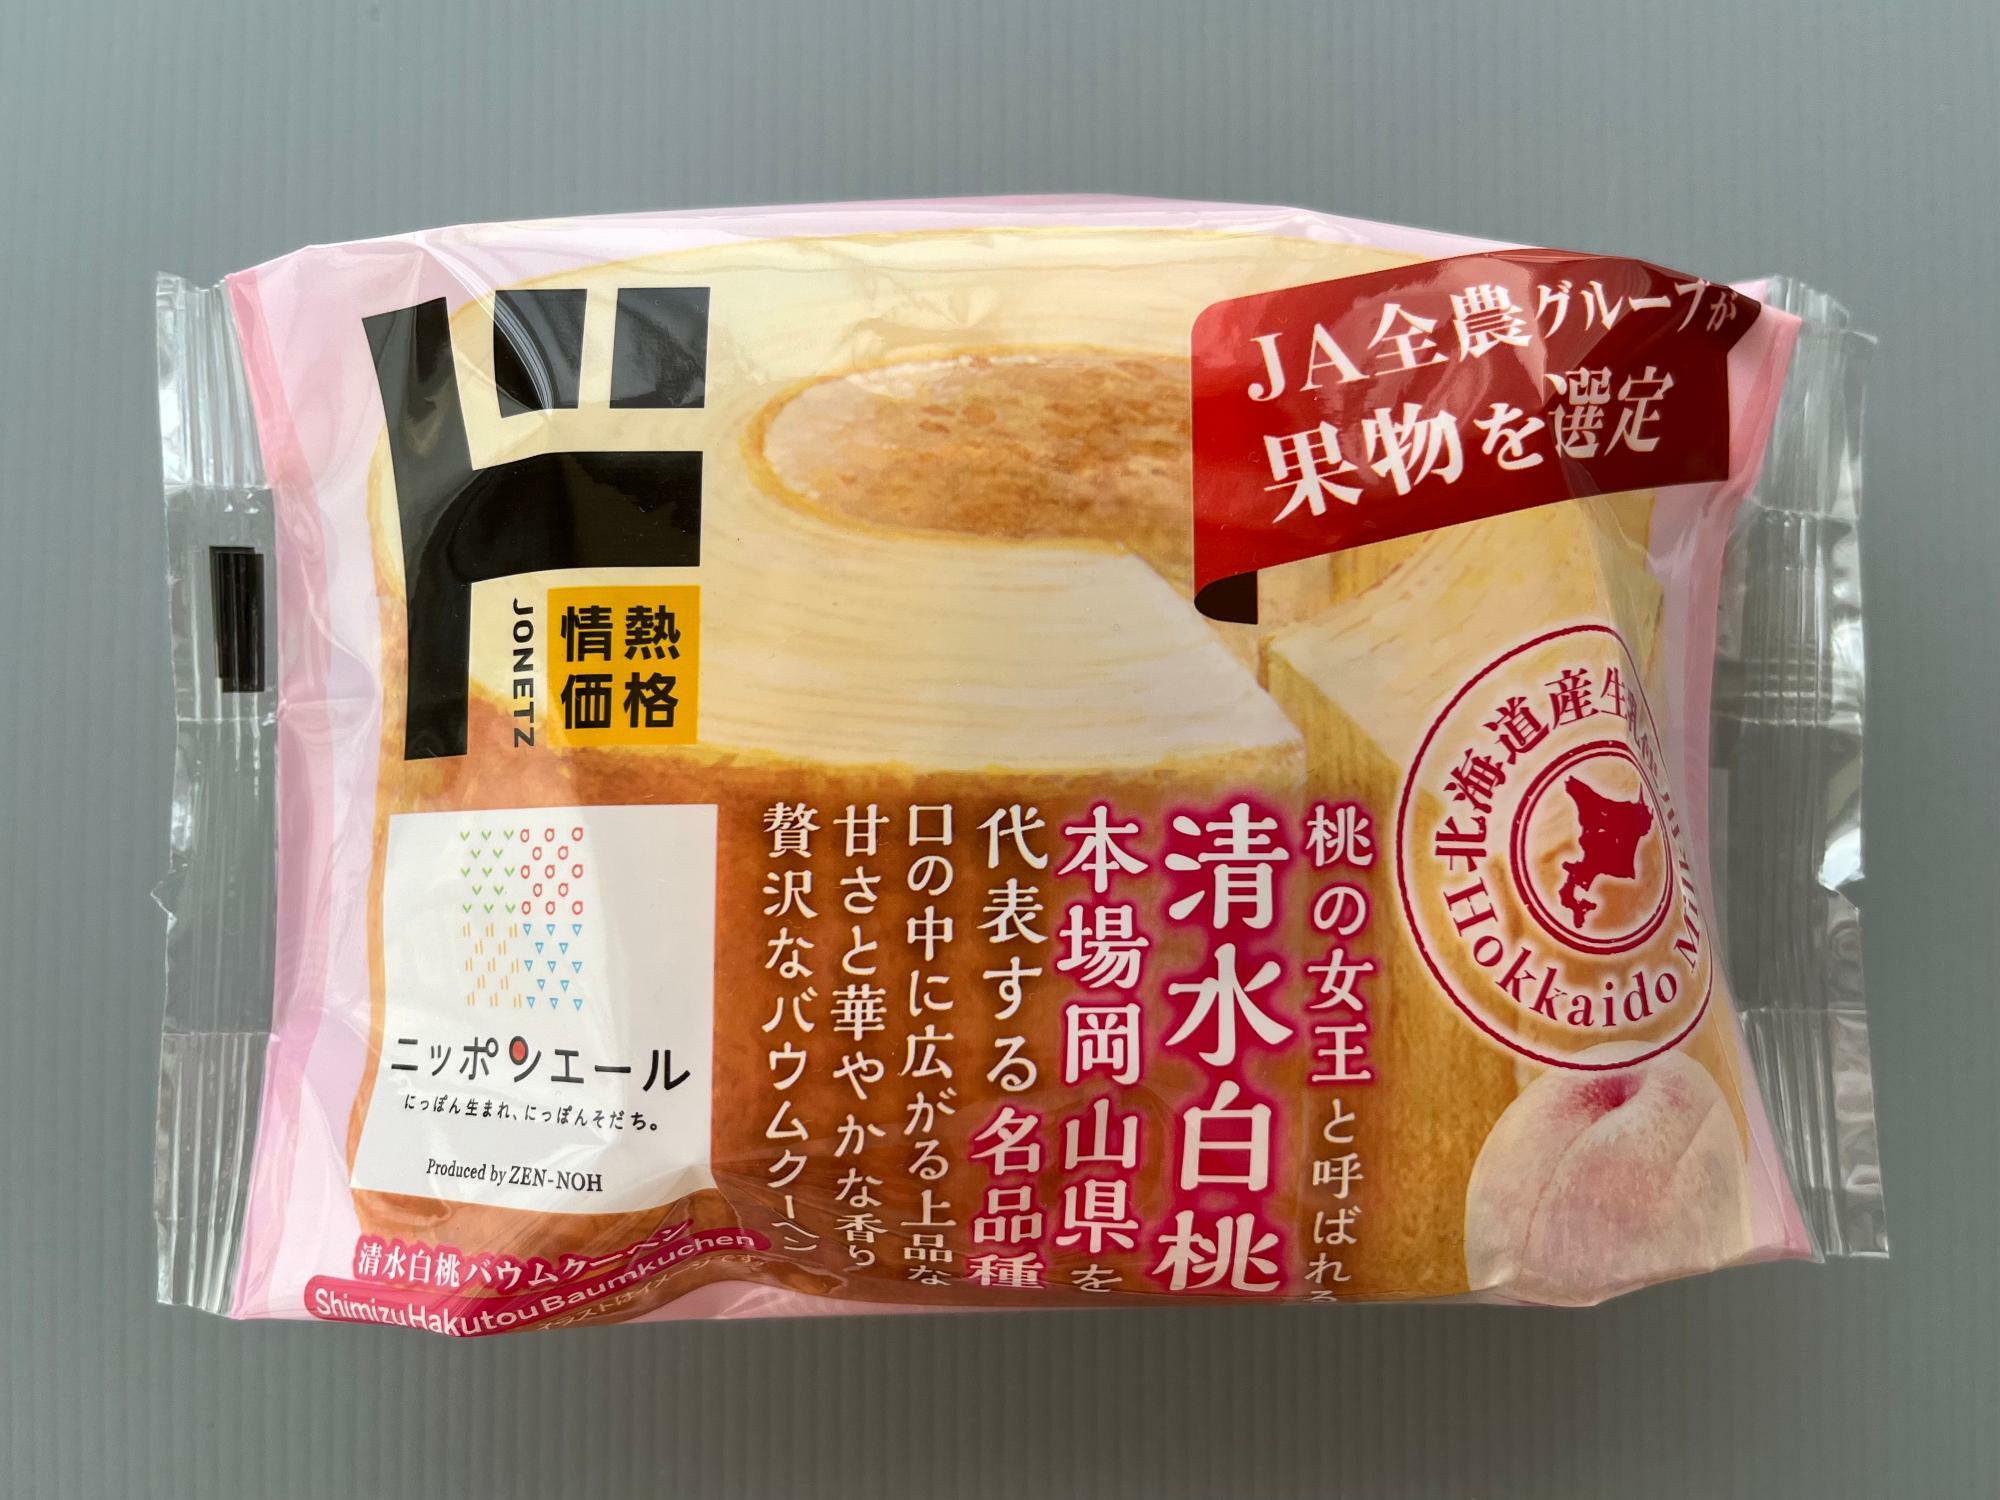 ▲ ド、清水白桃、JA全農、北海道産、などなど賑やかな日本語のパッケージに包まれている